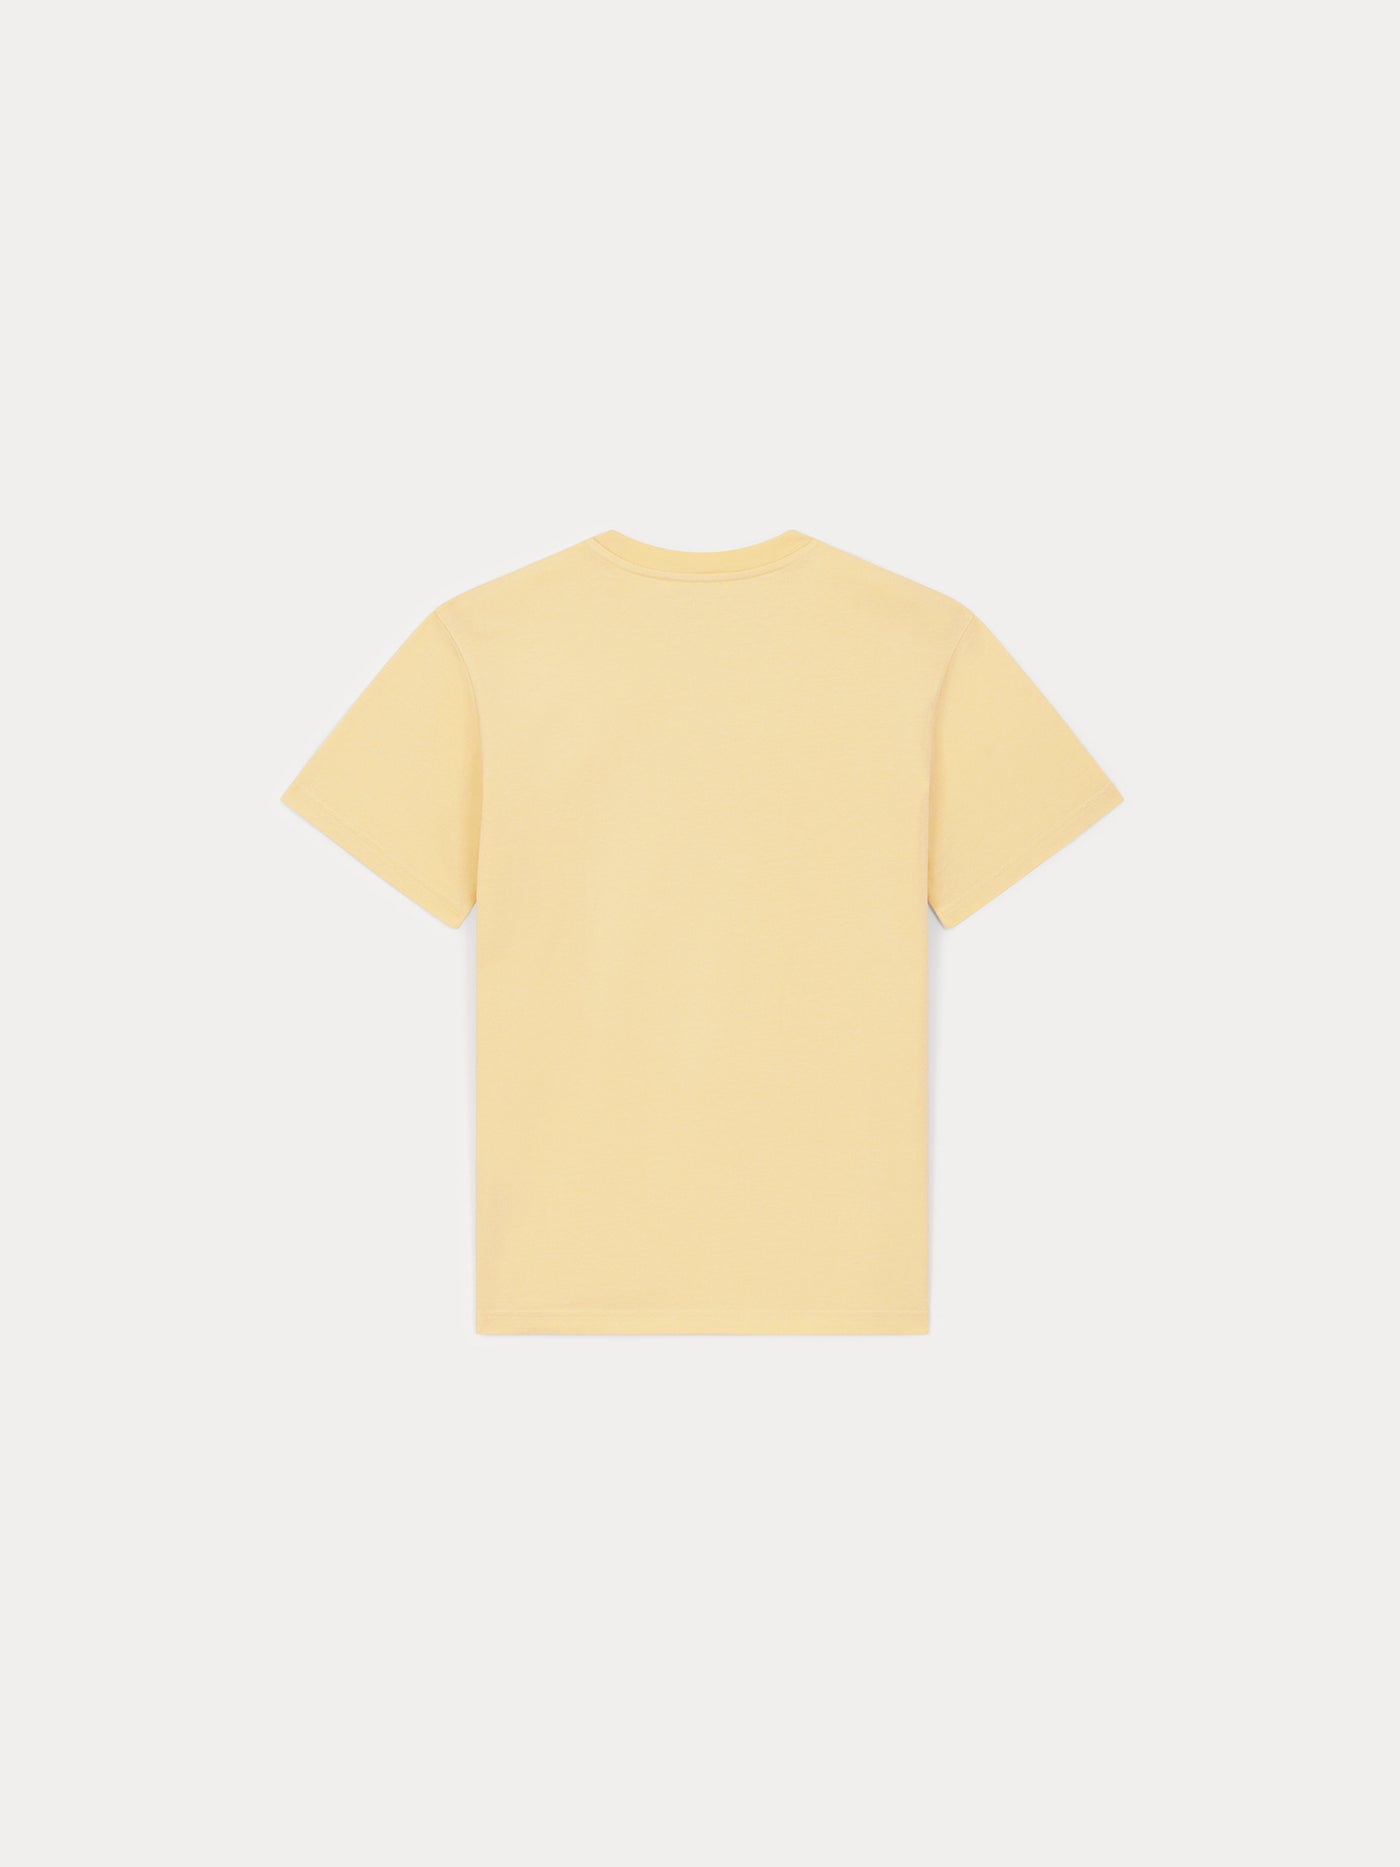 T-shirt sérigraphie Bonpoint héritage jersey de coton